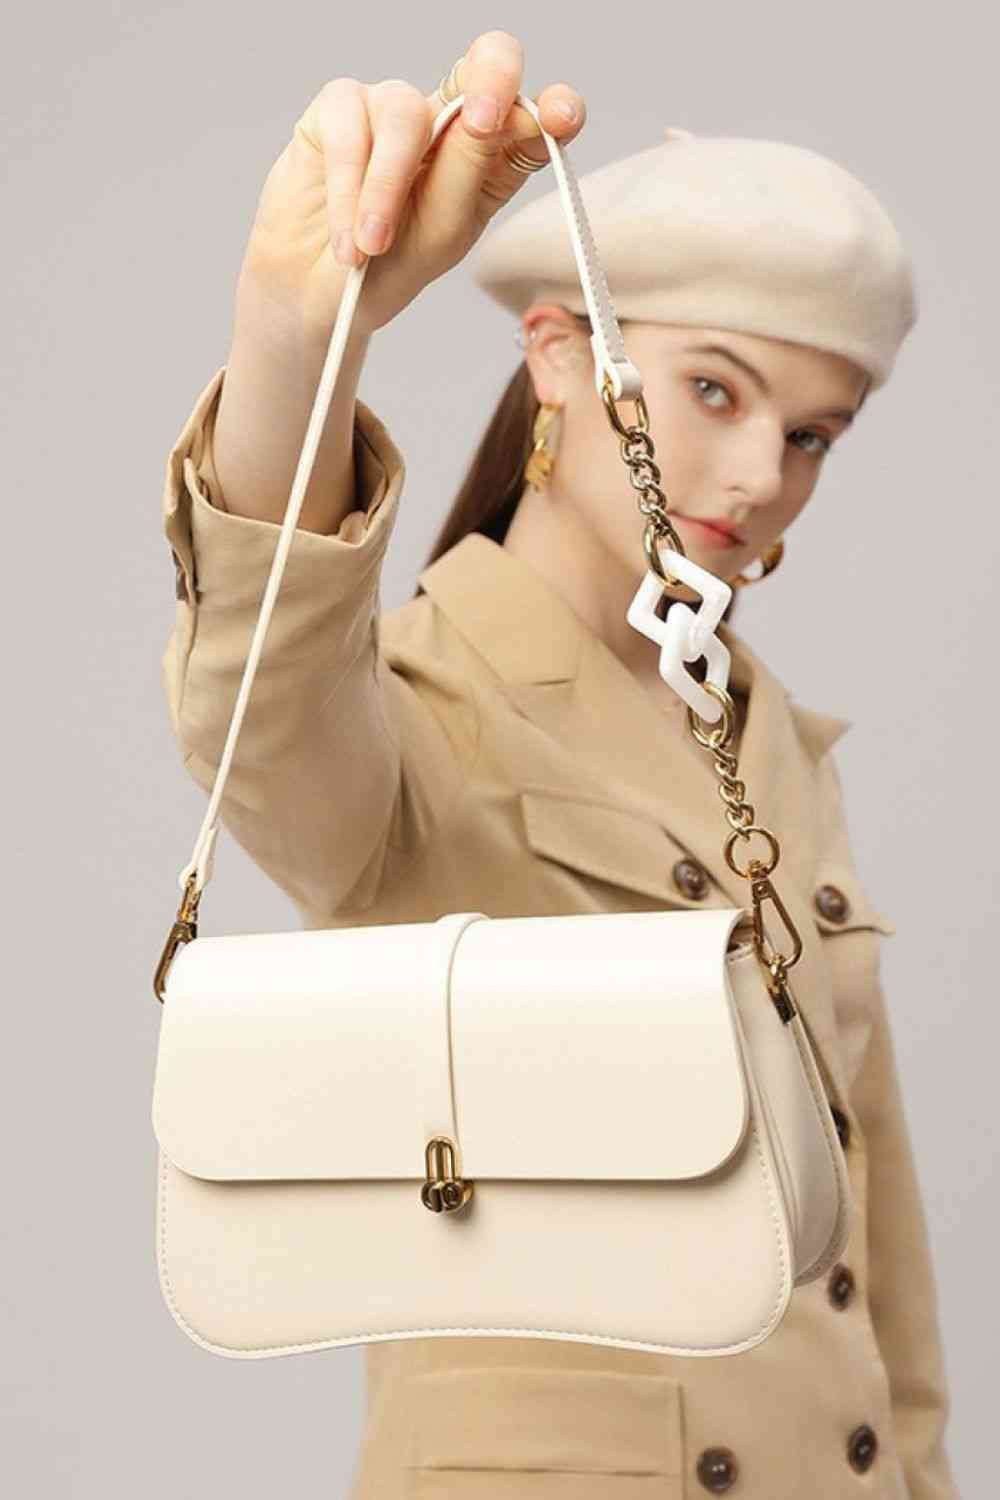 TEEK - Adored Away Handbag BAG TEEK Trend Ivory  